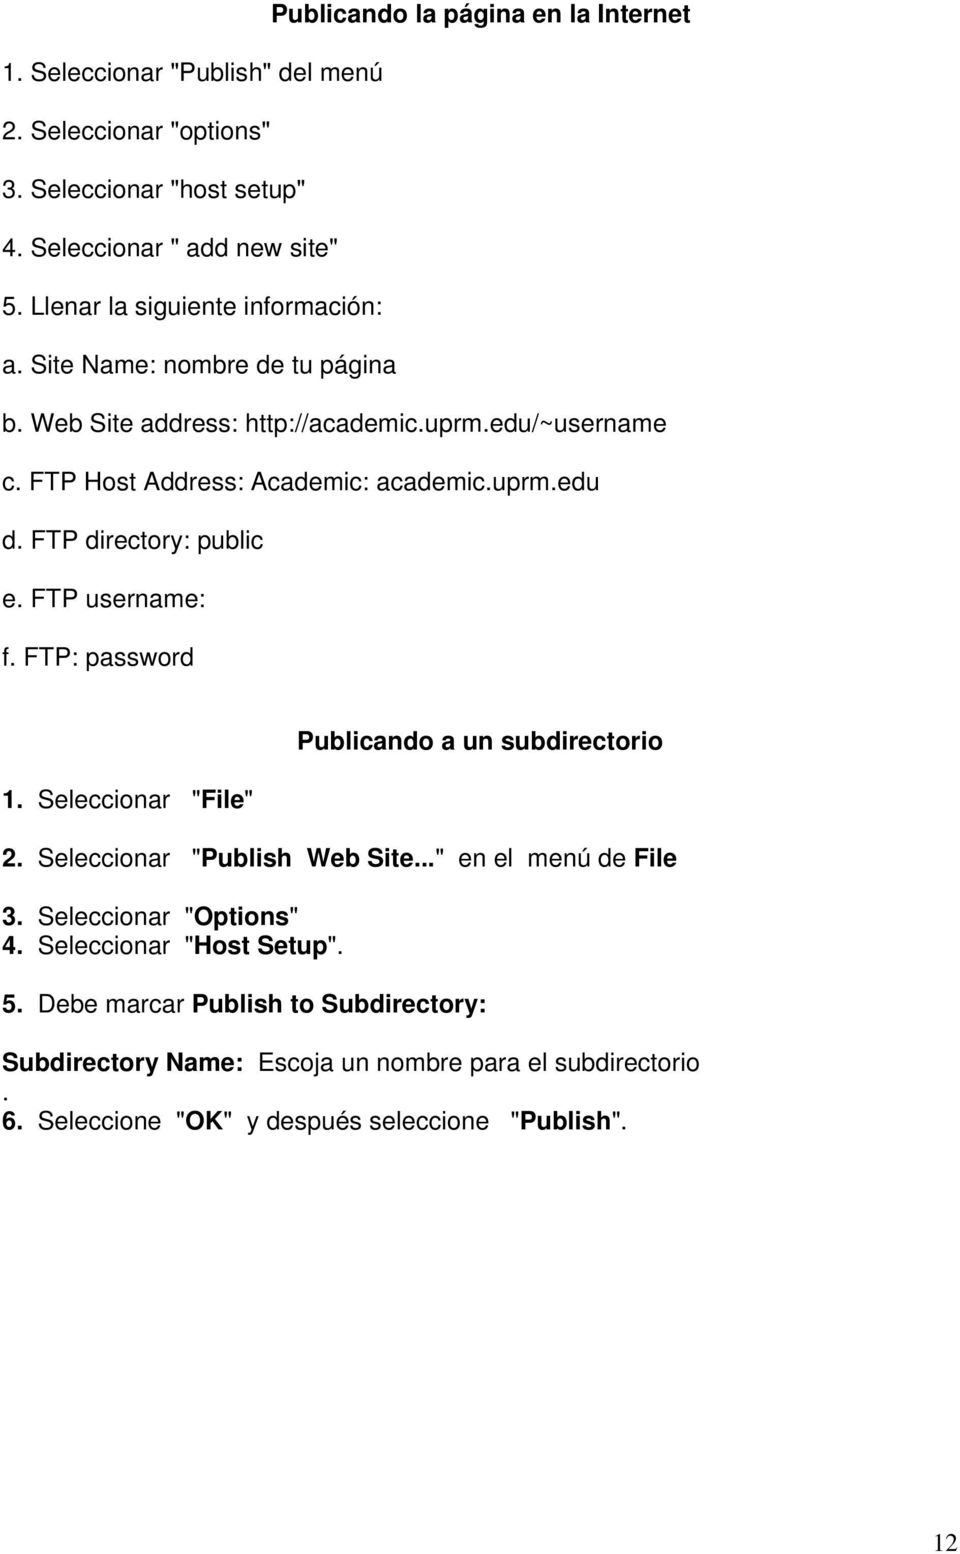 FTP directory: public e. FTP username: f. FTP: password 1. Seleccionar "File" Publicando a un subdirectorio 2. Seleccionar "Publish Web Site..." en el menú de File 3.